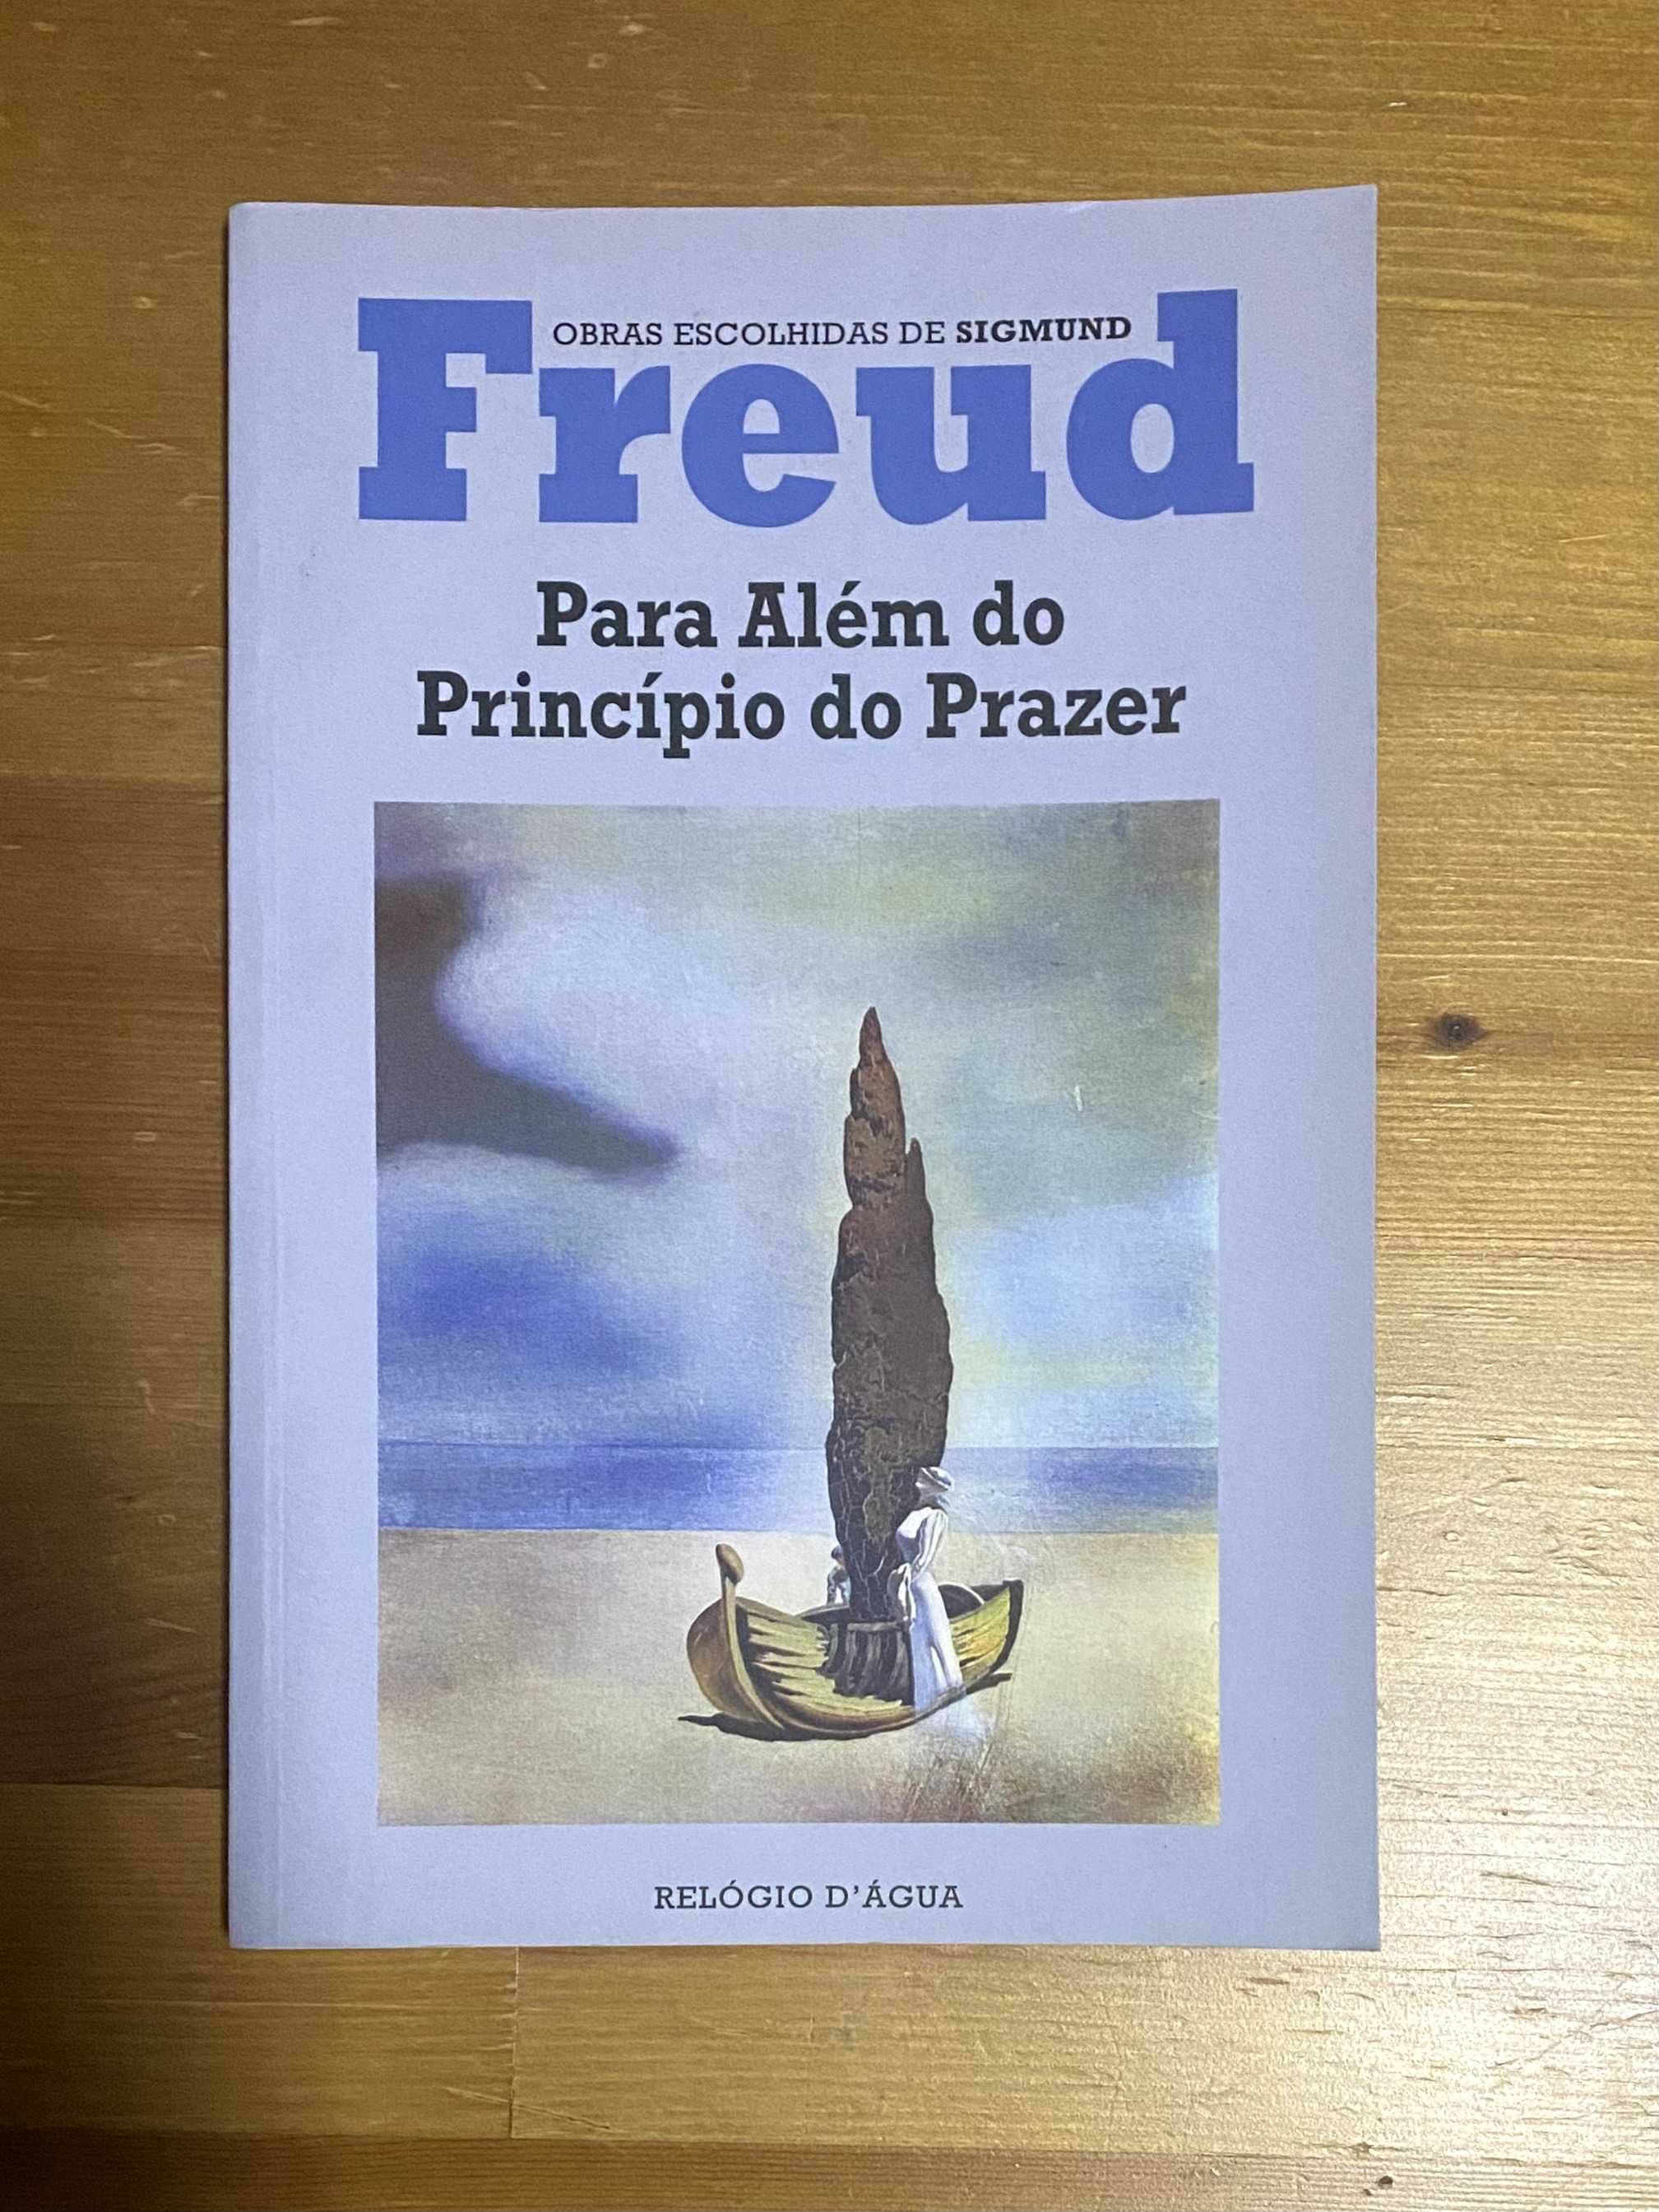 Livro "Para Além do Princípio do Prazer" de Sigmund Freud